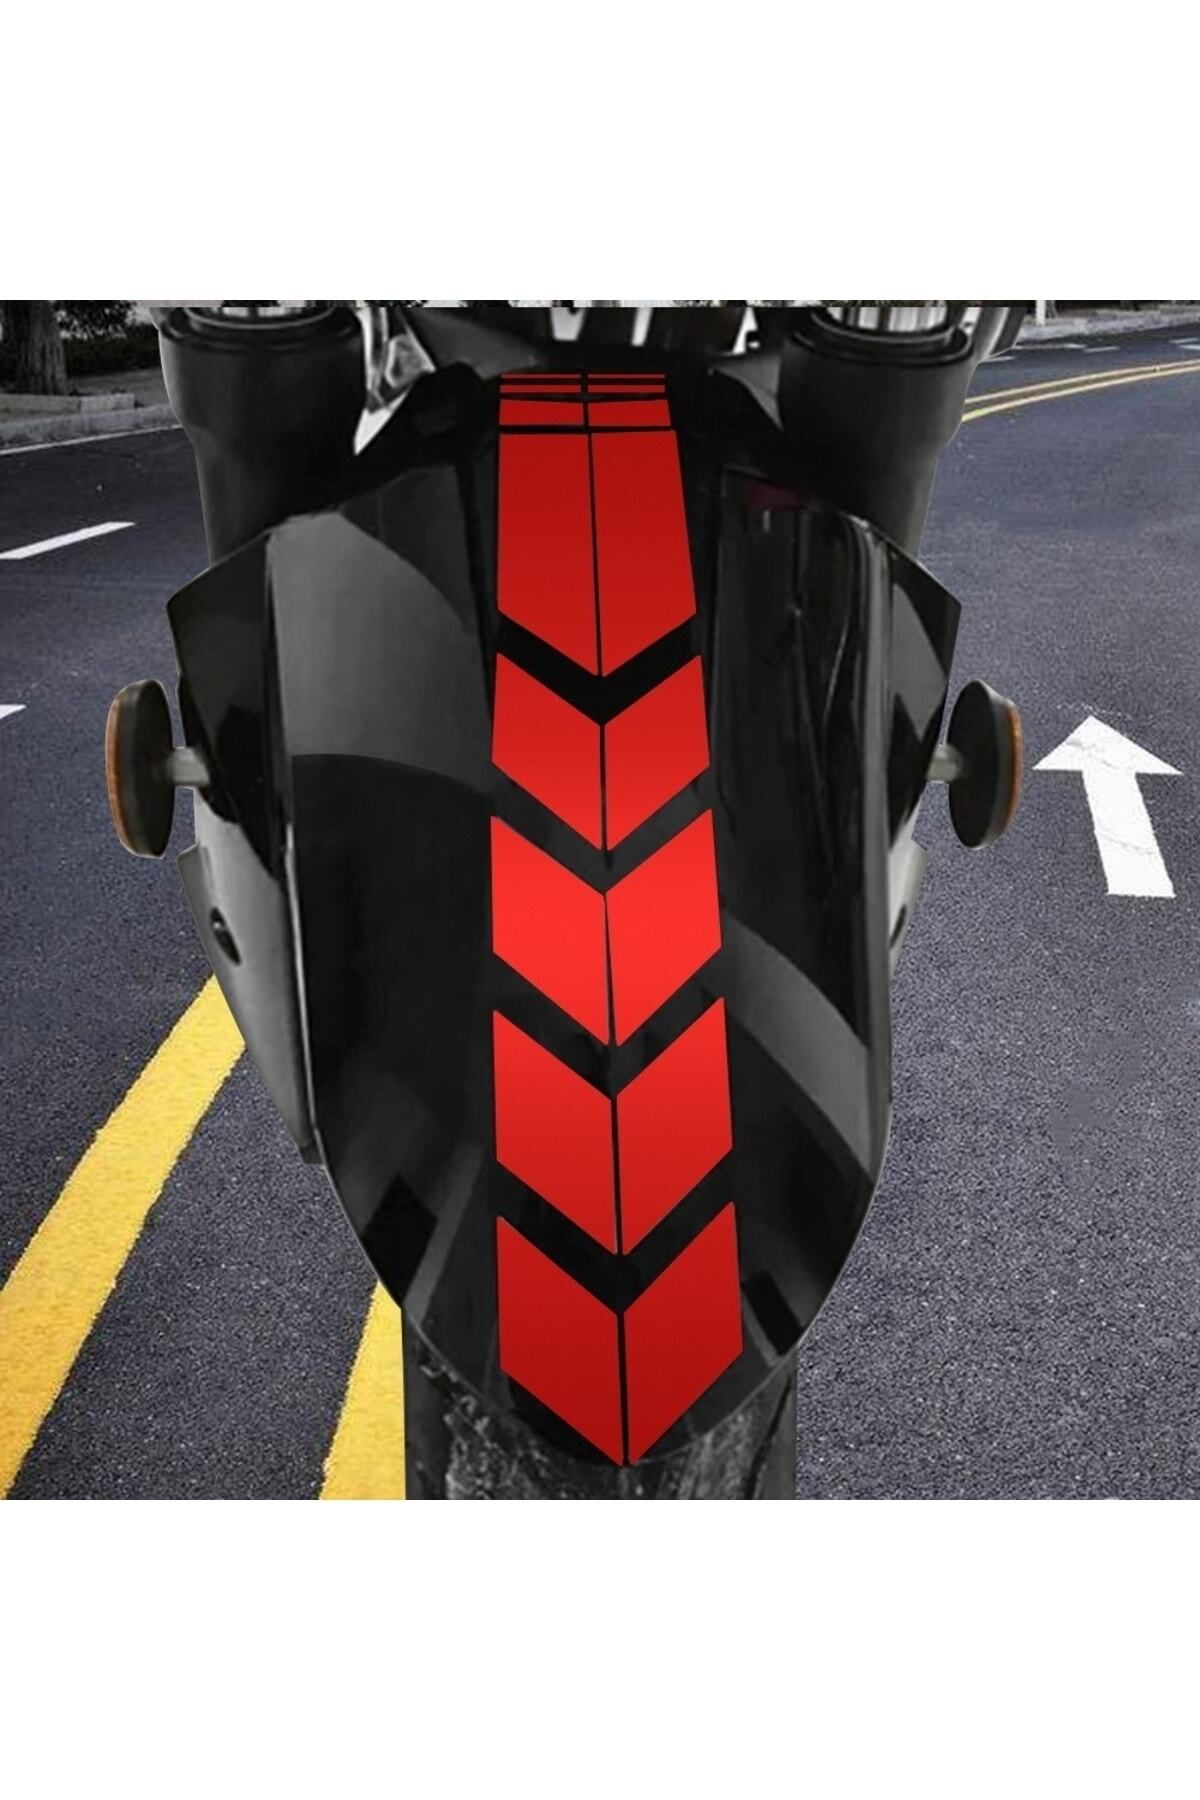 Redline Grafik Motosiklet Çamurluk Sticker Kırmızı